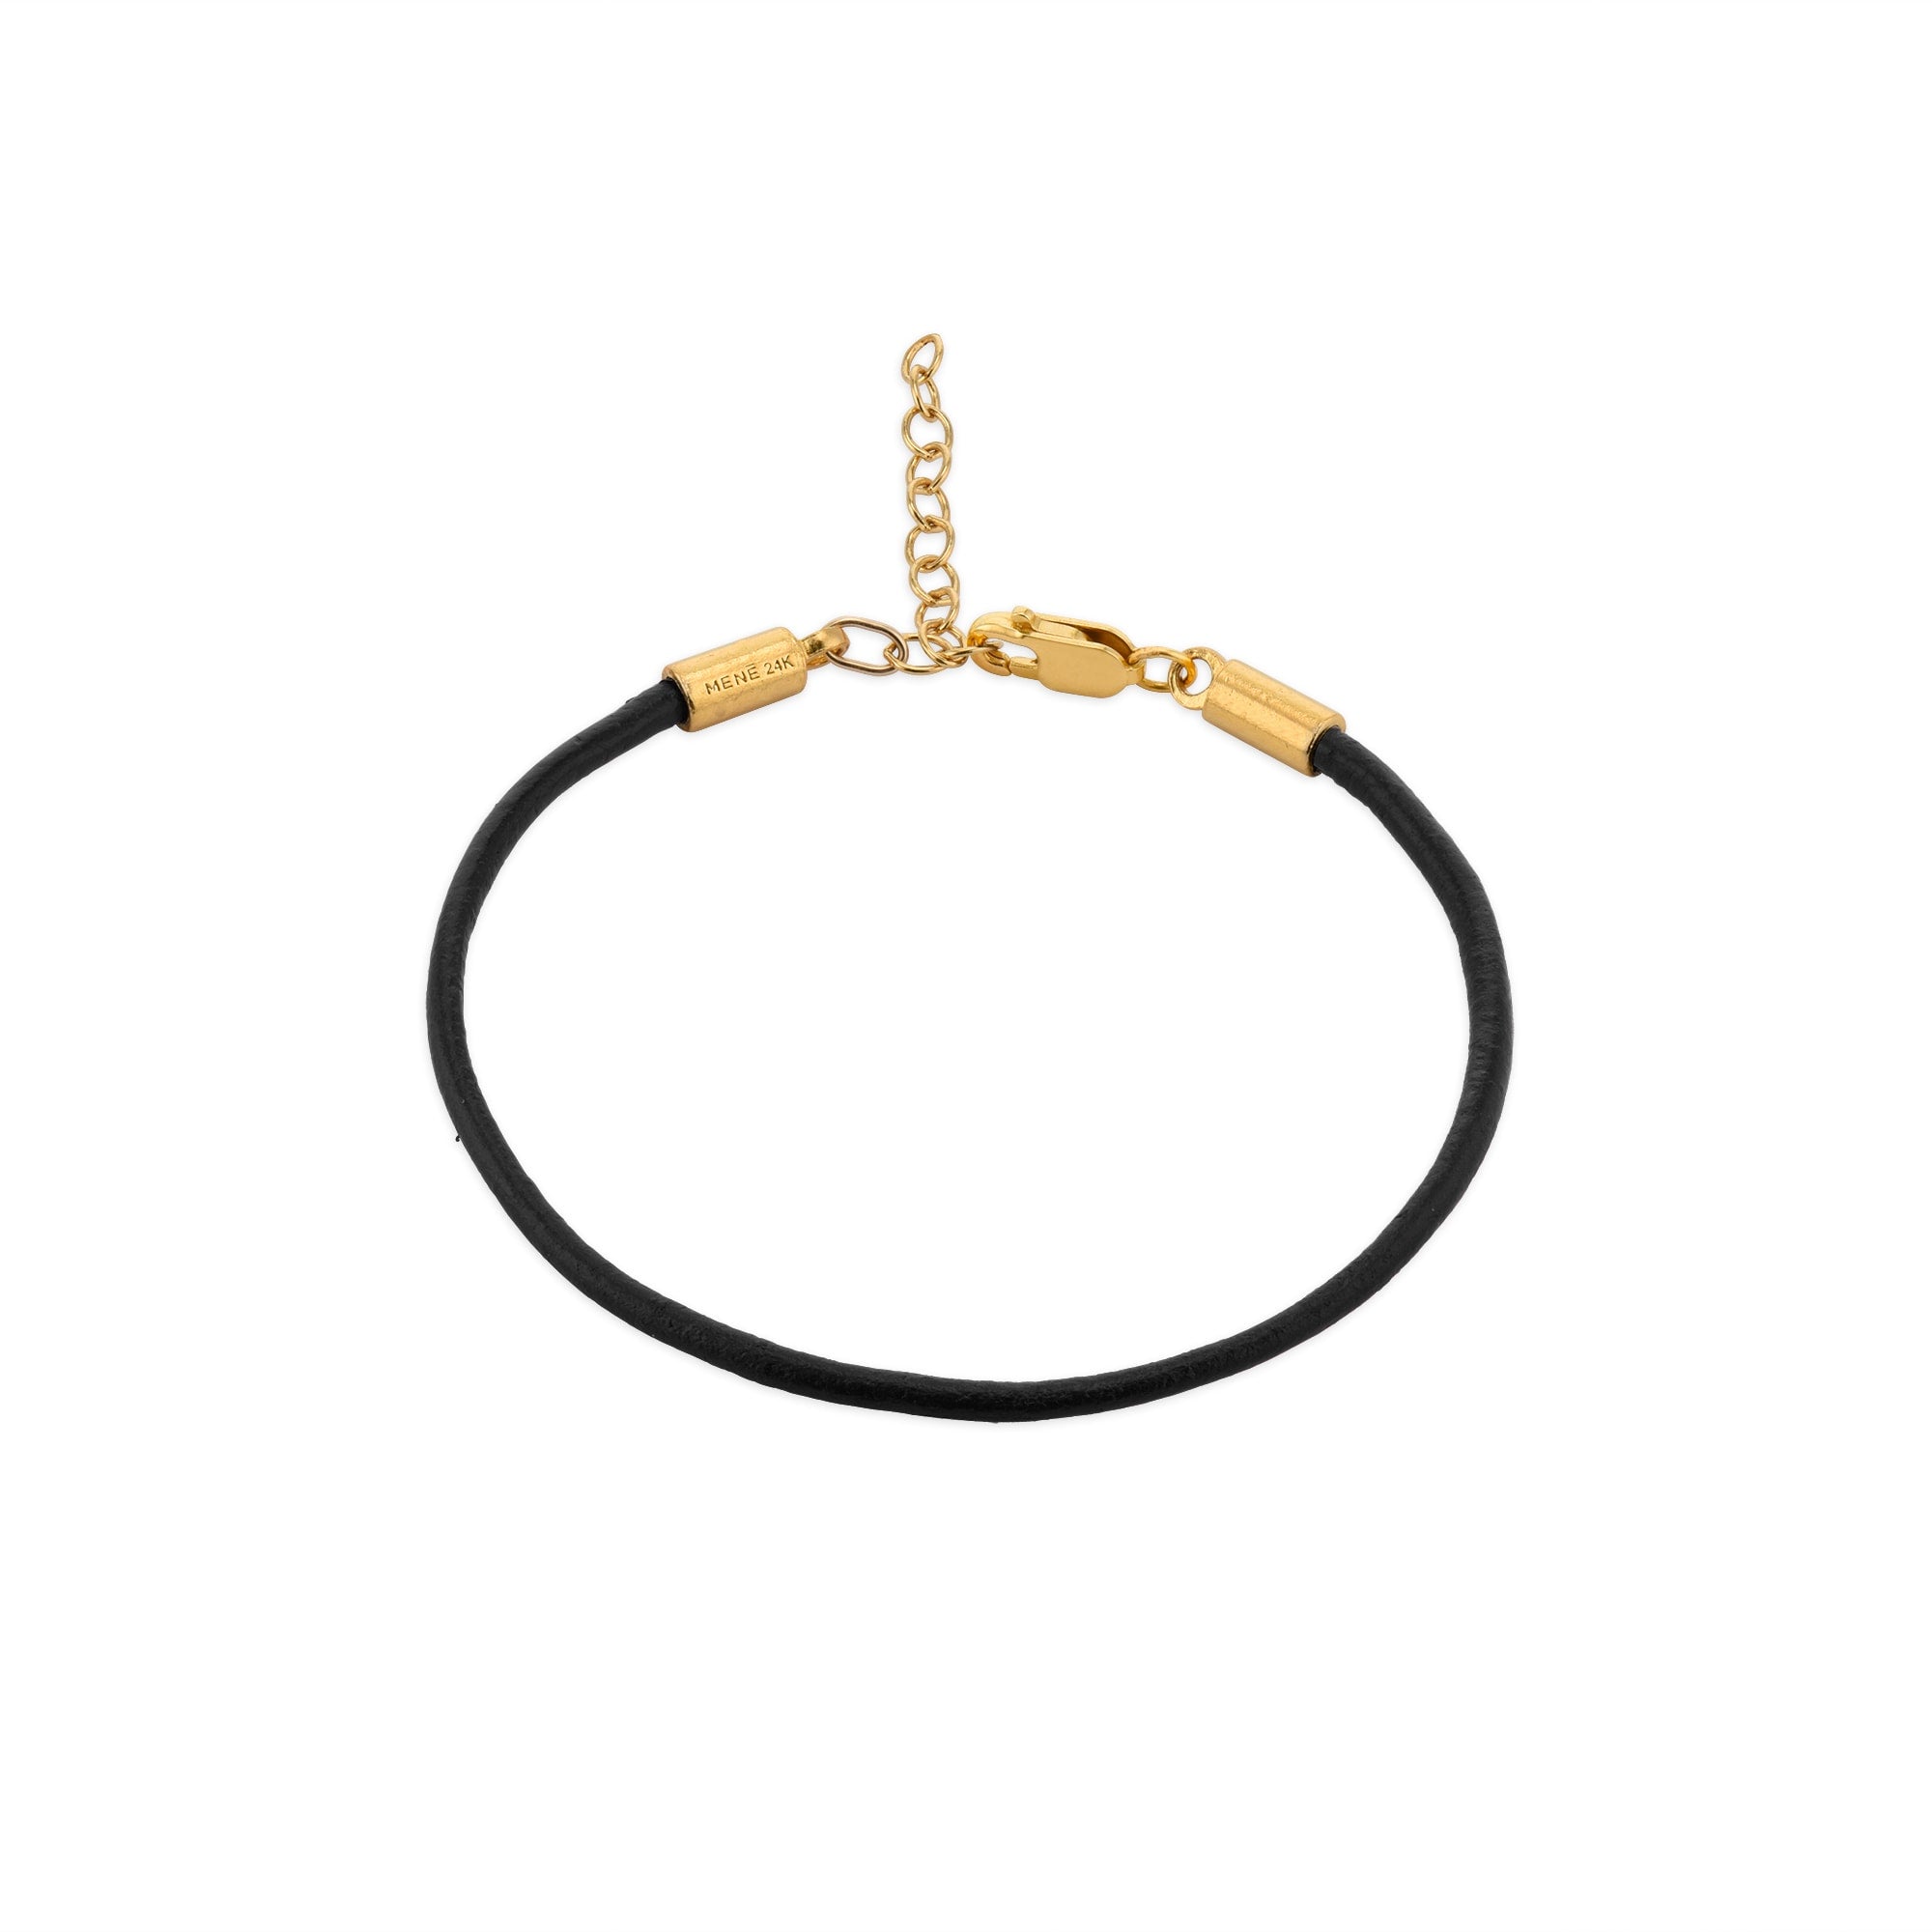 Small Gold Beads Black Beads Bracelet in 22k Gold, Bracelet for Women, Baby  Bracelet, All Size Available for Gift - Etsy